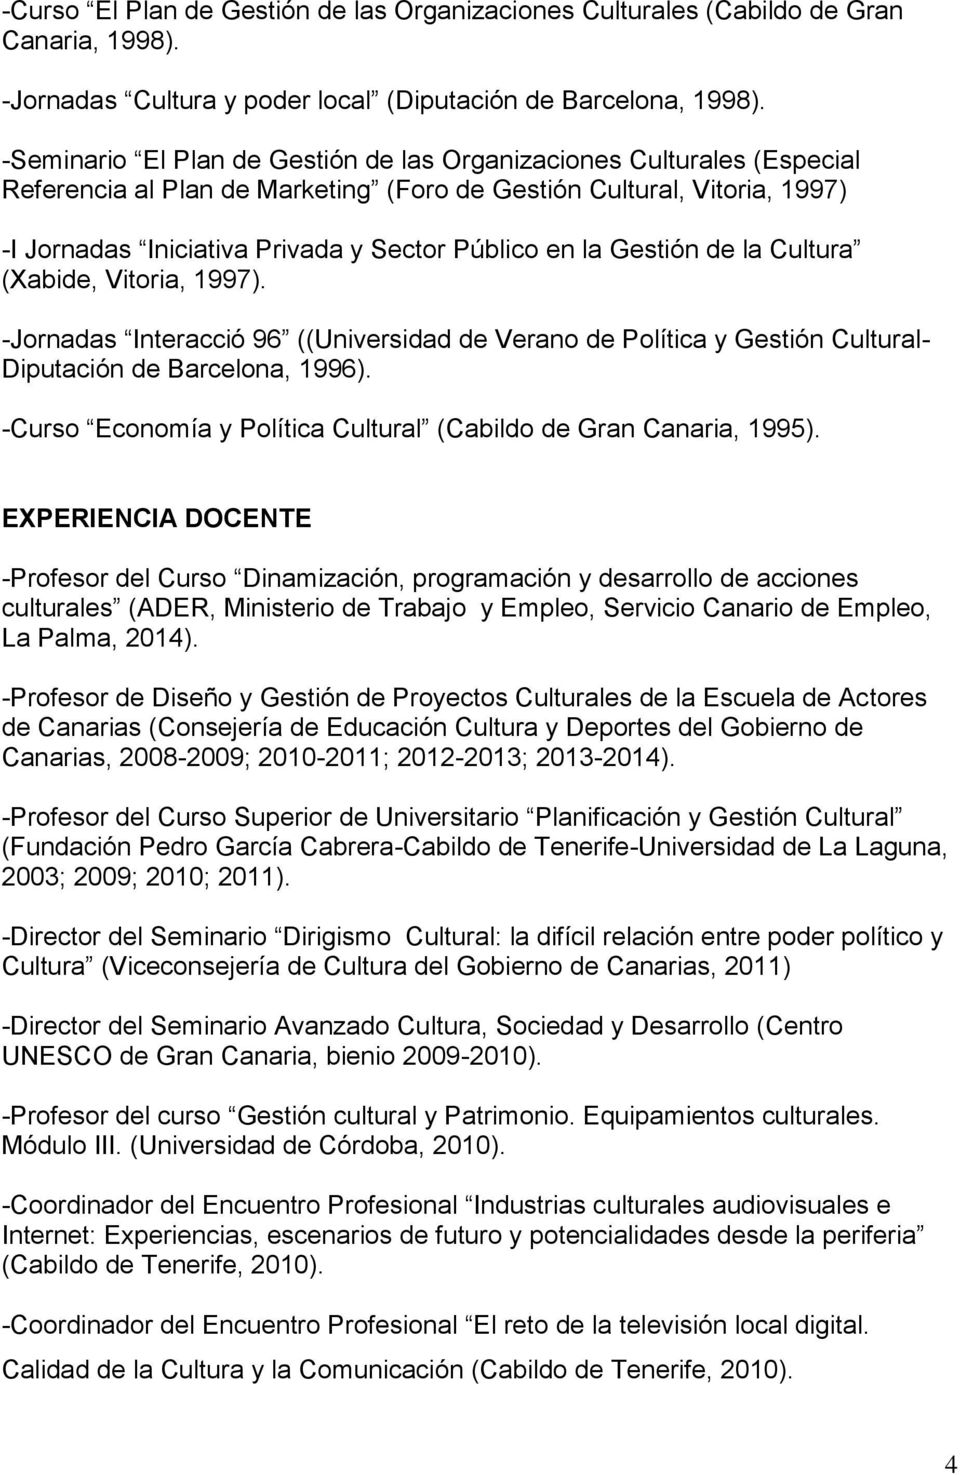 la Gestión de la Cultura (Xabide, Vitoria, 1997). -Jornadas Interacció 96 ((Universidad de Verano de Política y Gestión Cultural- Diputación de Barcelona, 1996).